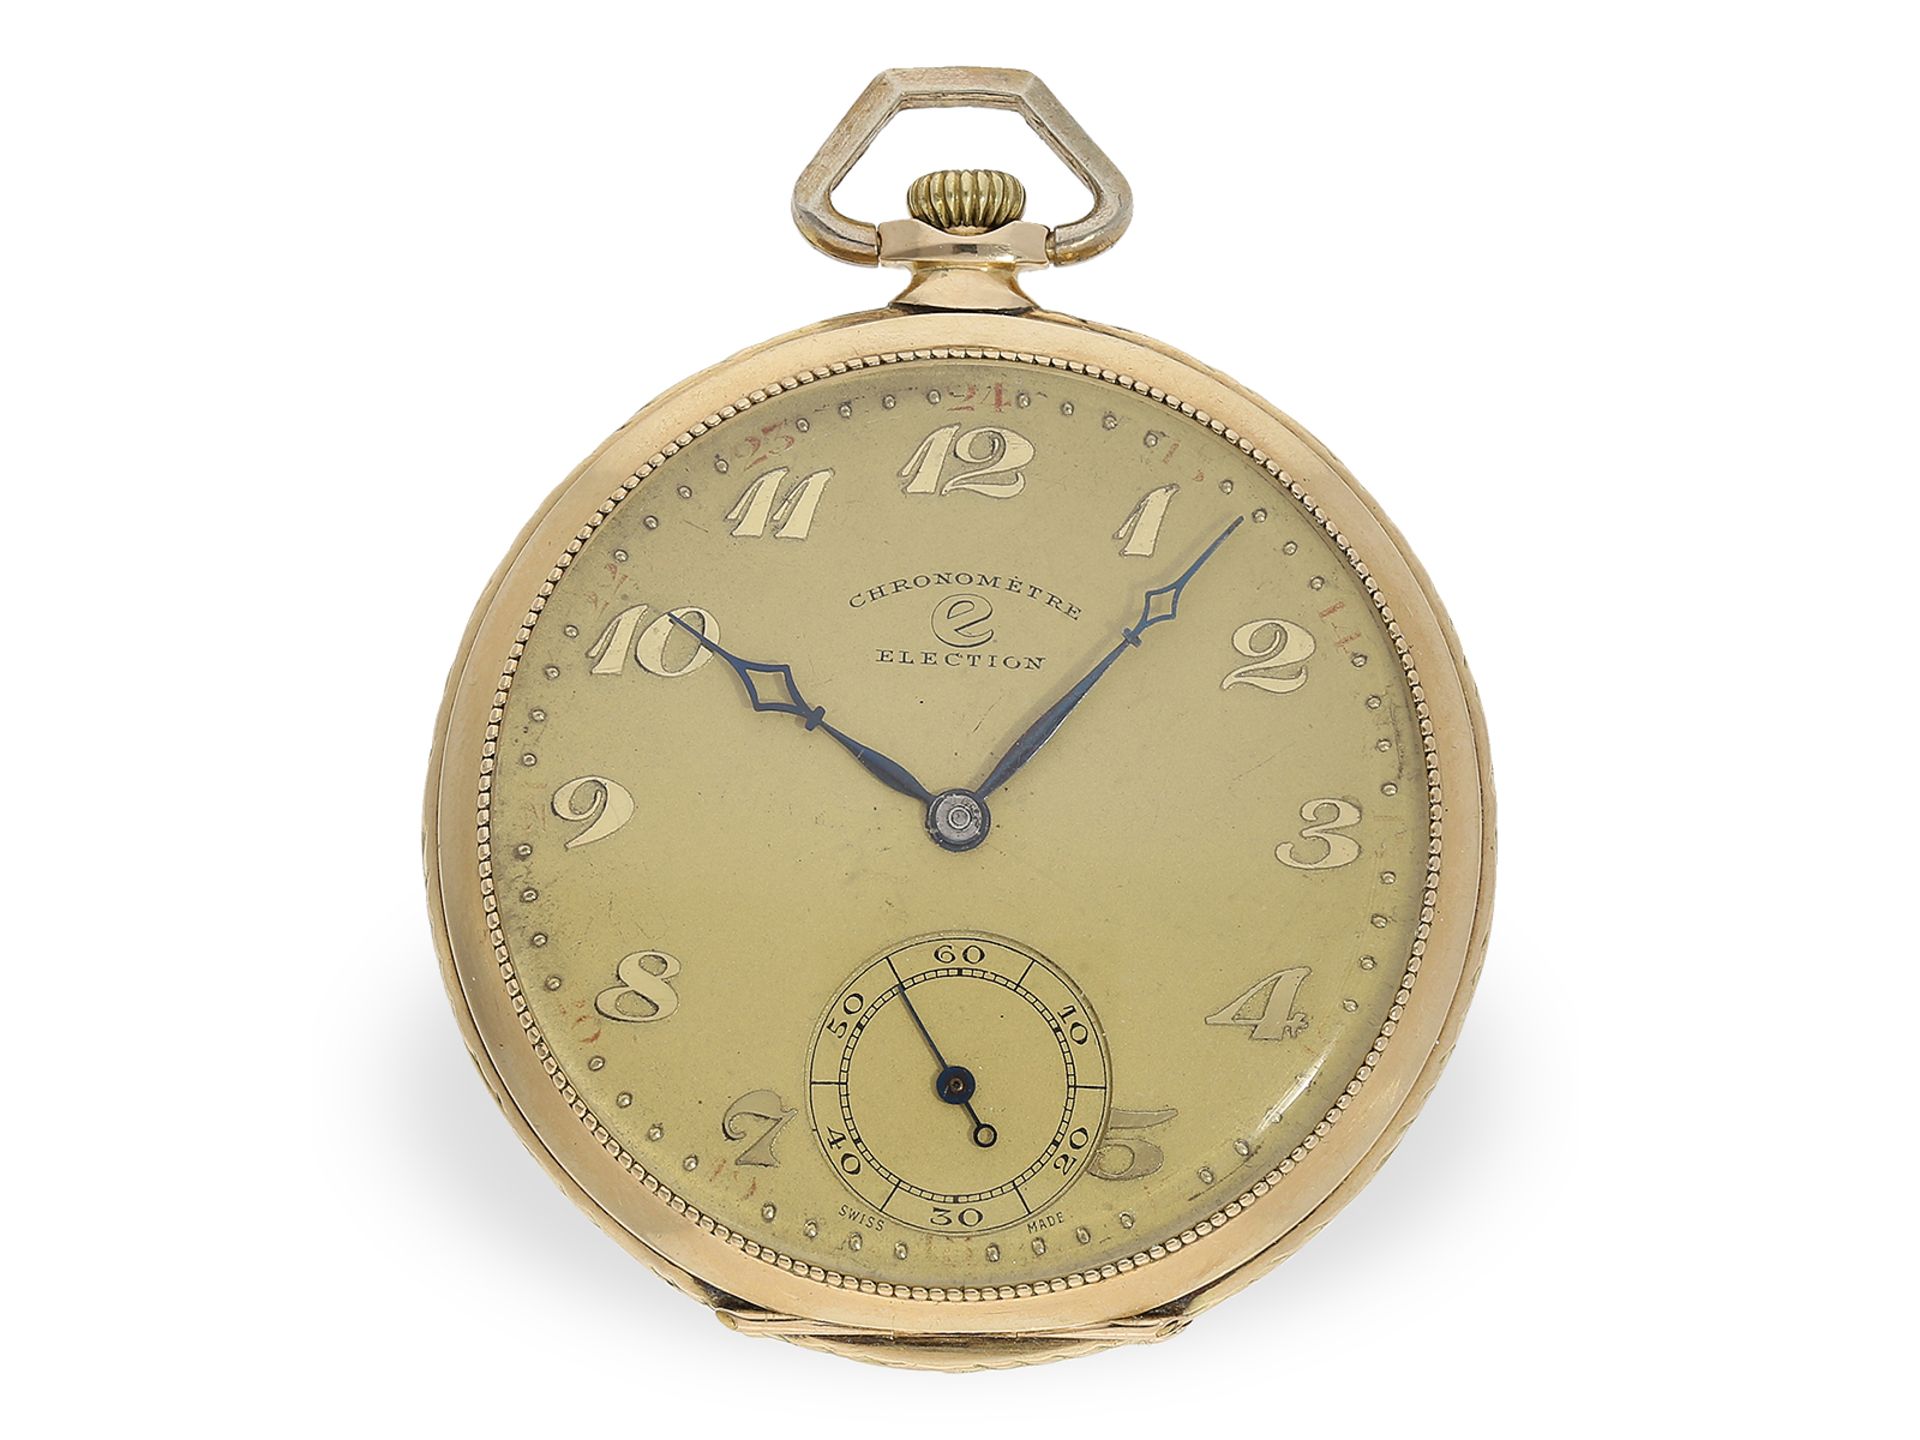 Art déco Frackuhr, Taschenuhr Chronometre Election, ca. 1930